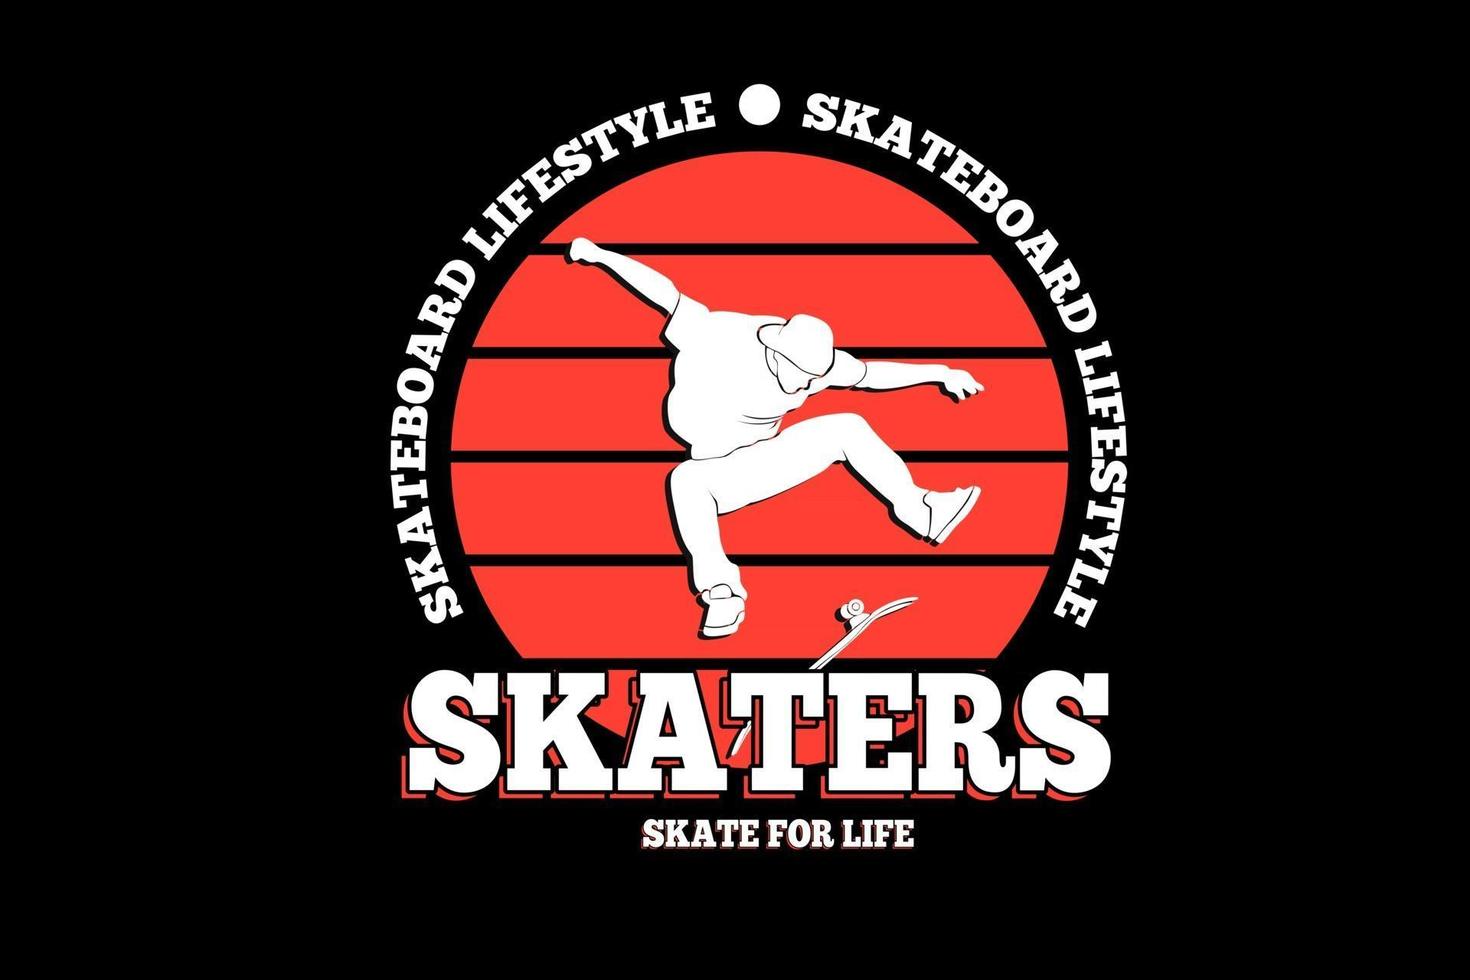 patinaje estilo de vida patinadores skate for life color blanco y rojo vector